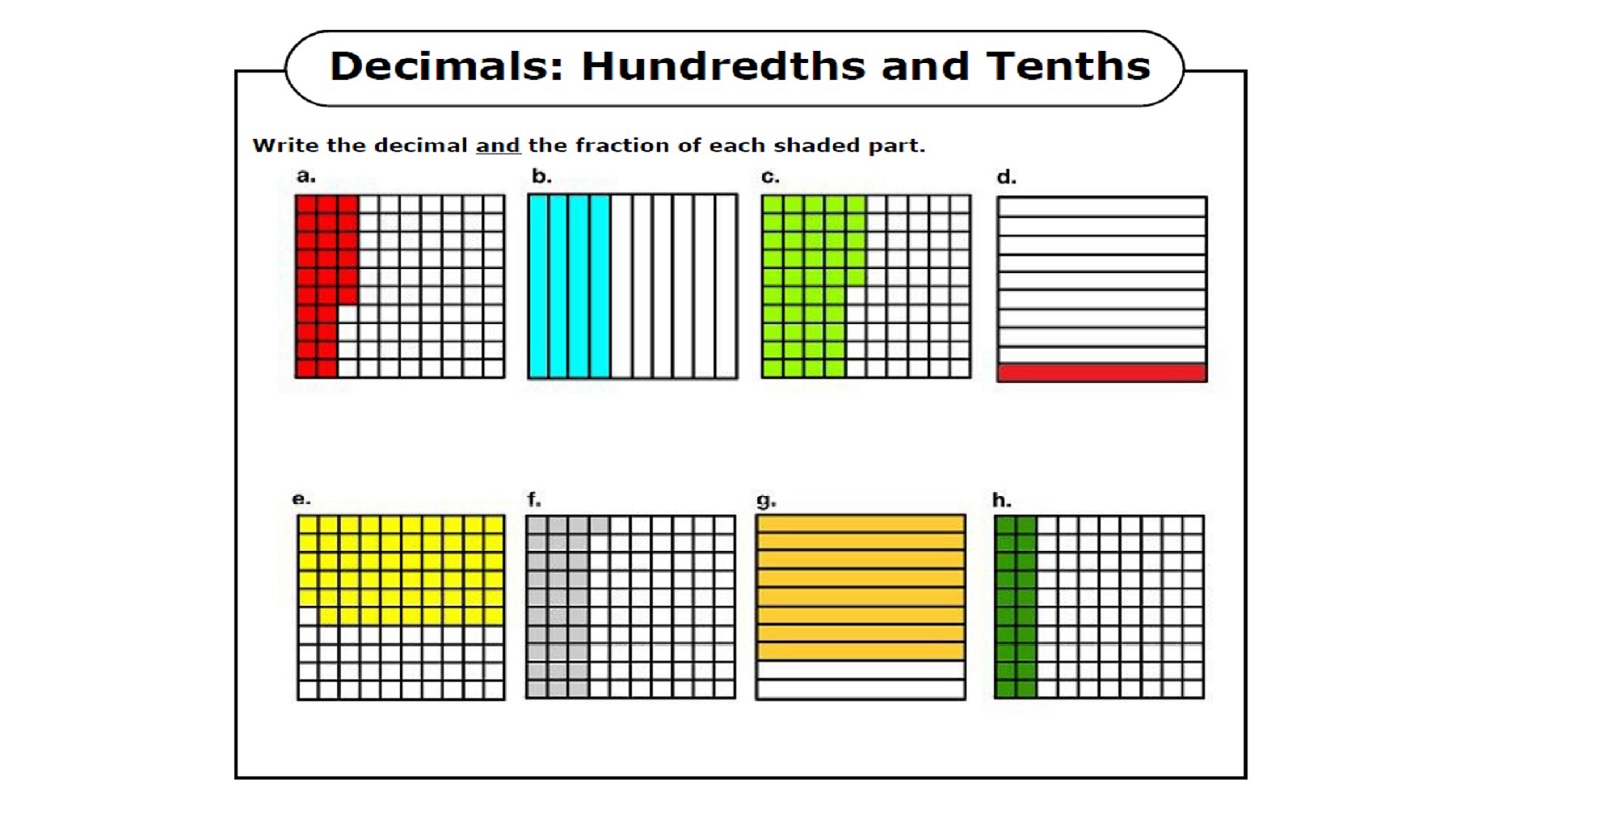 tenths-and-hundredths-worksheet-decimal